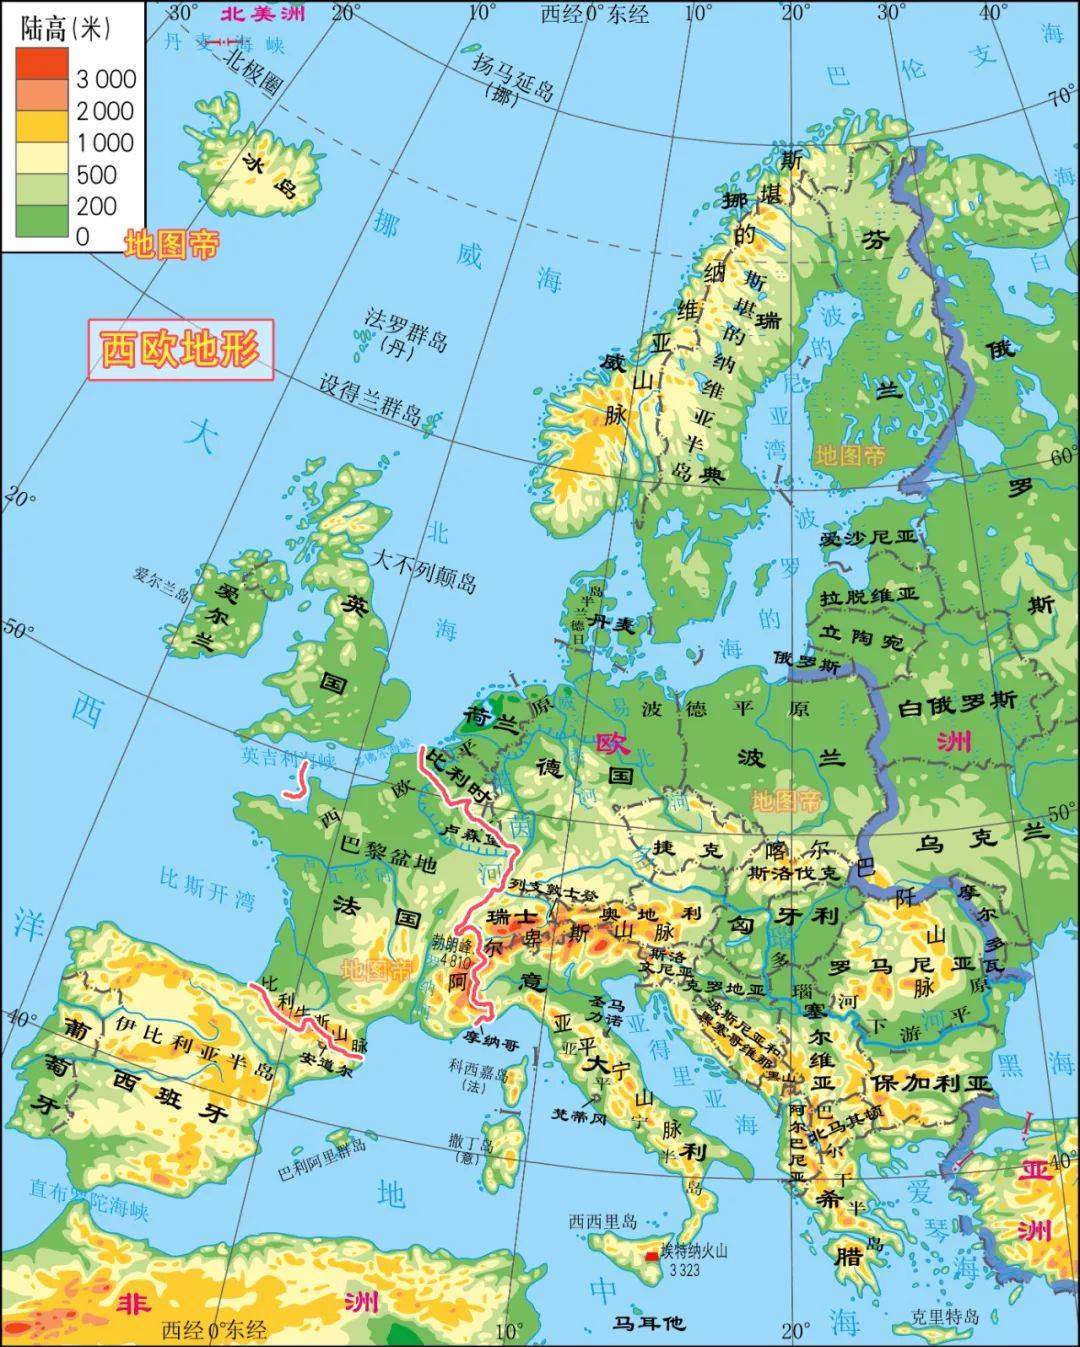 三边临水,陆地邻国按顺时针方向有:比利时,卢森堡,德国,瑞士,意大利